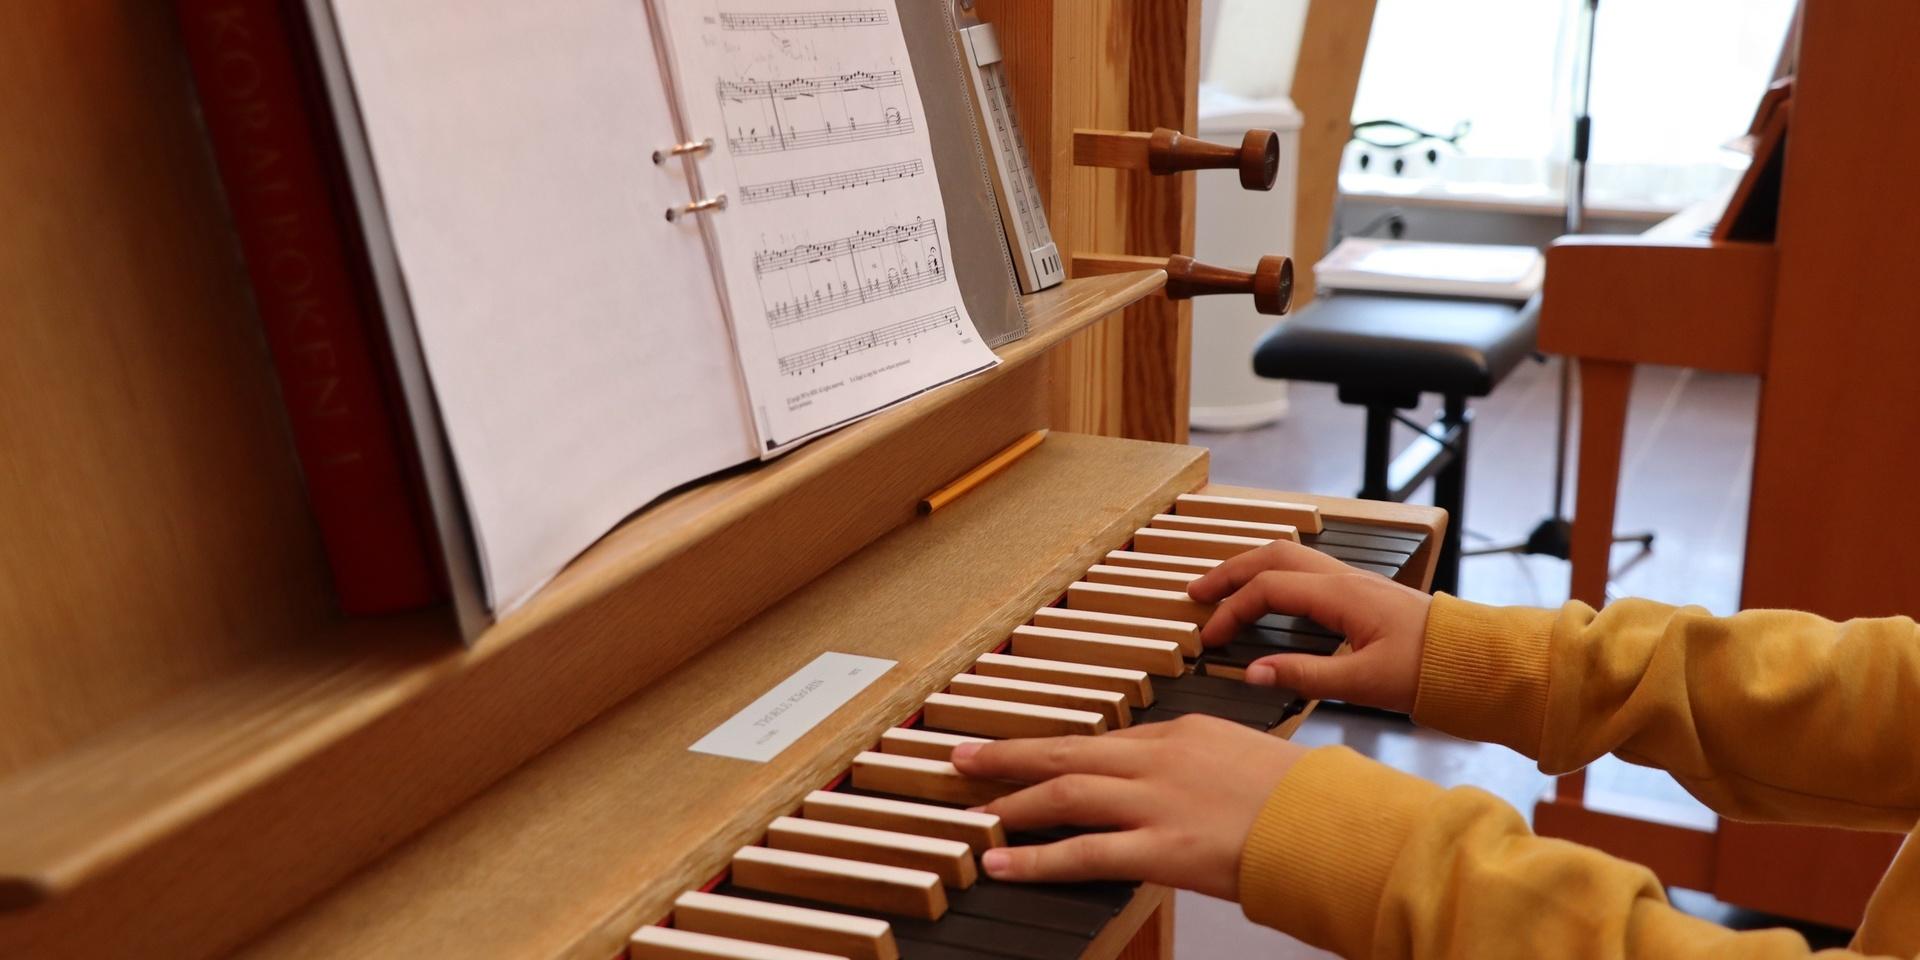 ”Orgel är ett häftigt instrument”, tycker Isak.